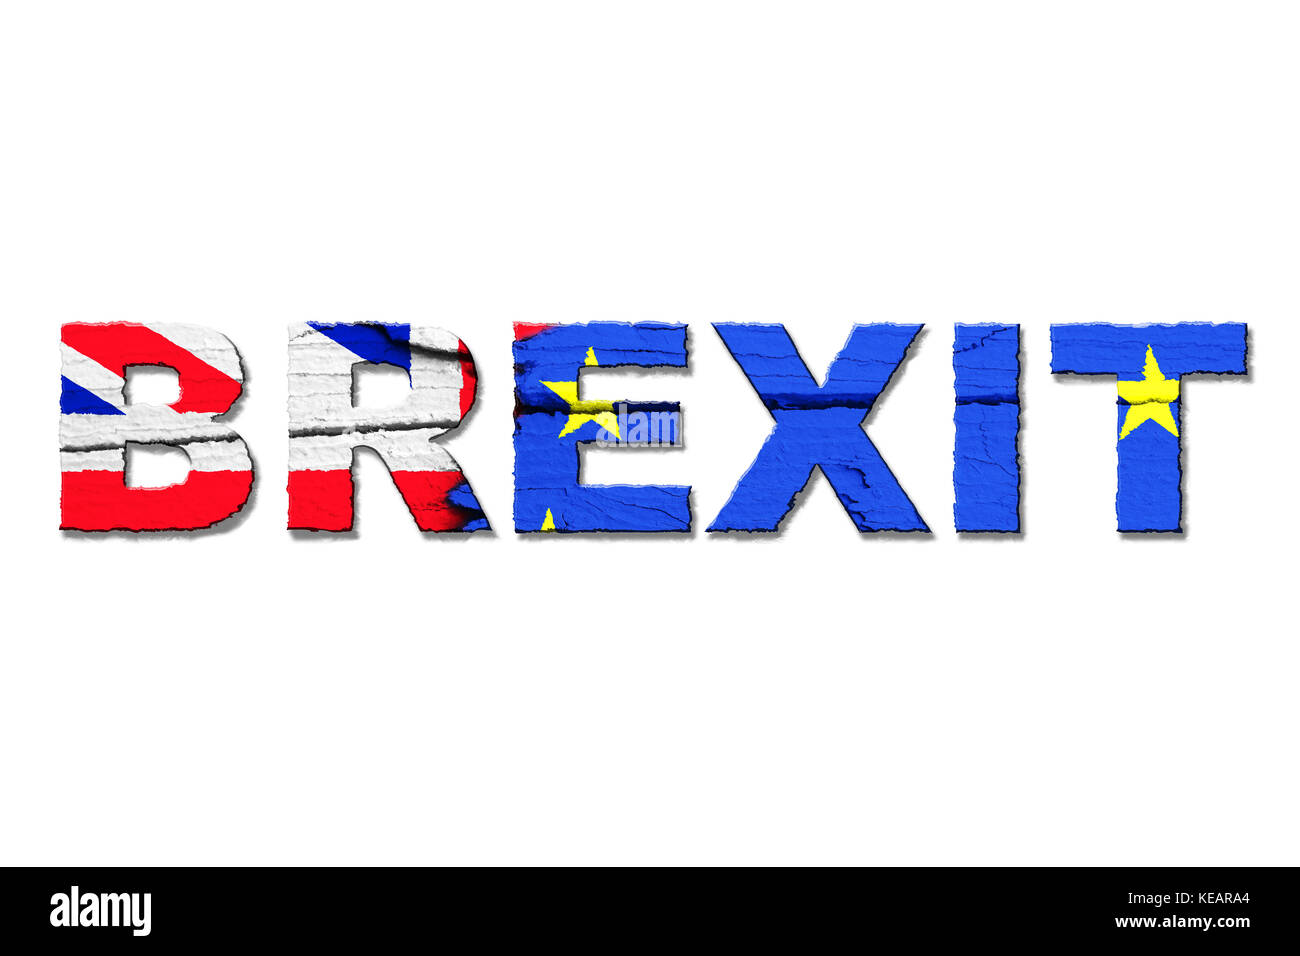 Brexit parola isolata con i colori dalla bandiera dell'Unione europea (UE) e il Regno Unito (UK) dipinte con intensi colori luminosi su legno incrinato Foto Stock